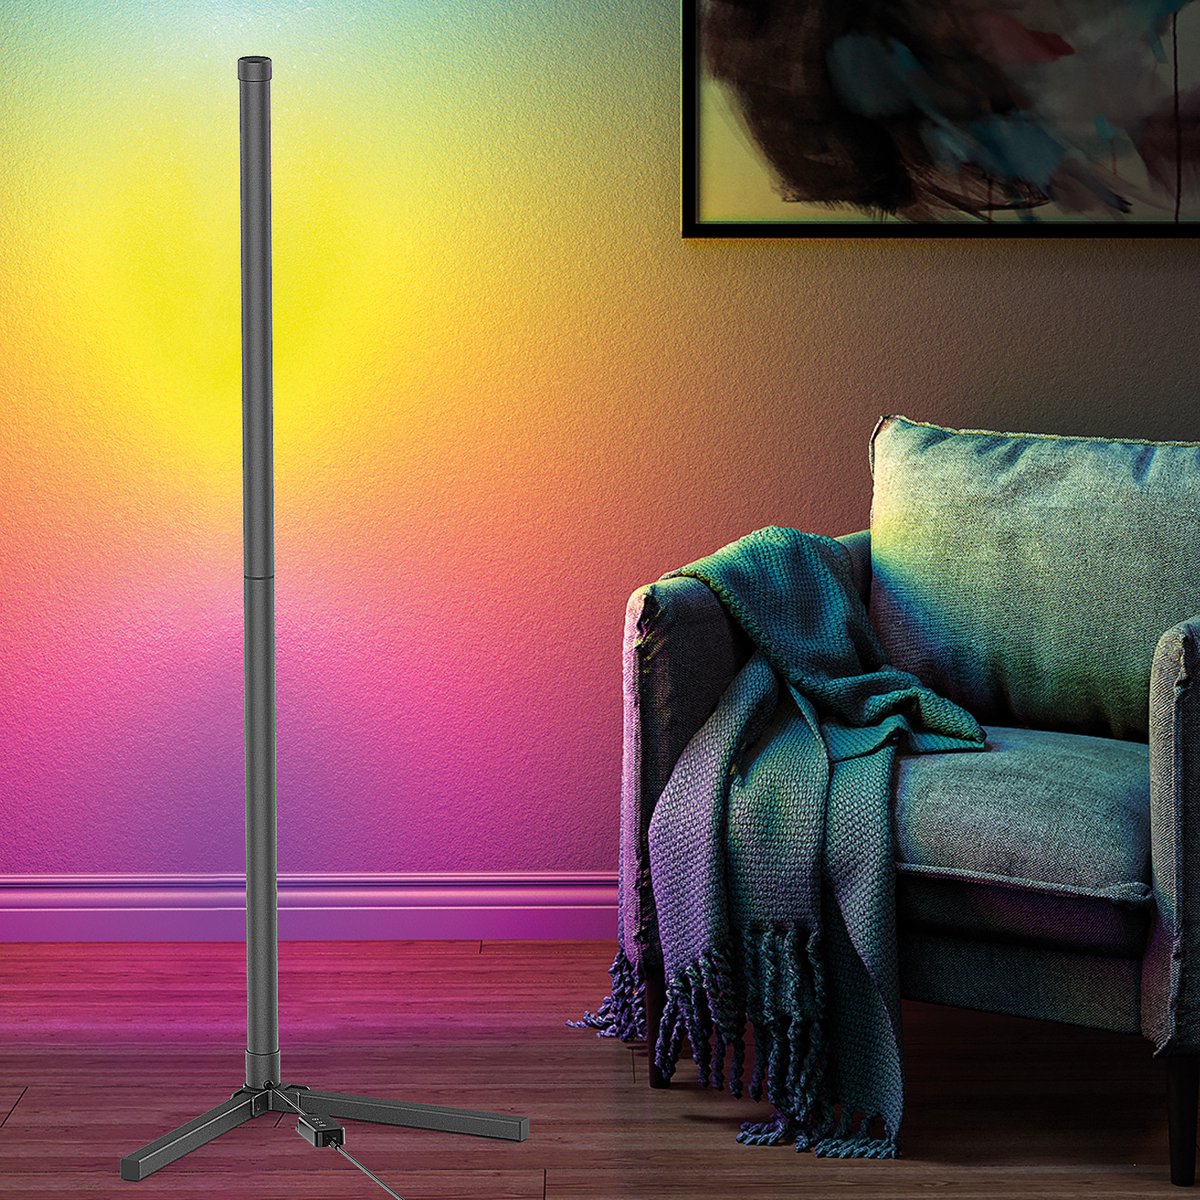 Realpower - Lightstick ONE lamp - LED Lamp - Lamp Woonkamer - Staand Lamp - Sfeerlamp op Netstroom - Met Afstandsbediening en App - RGB